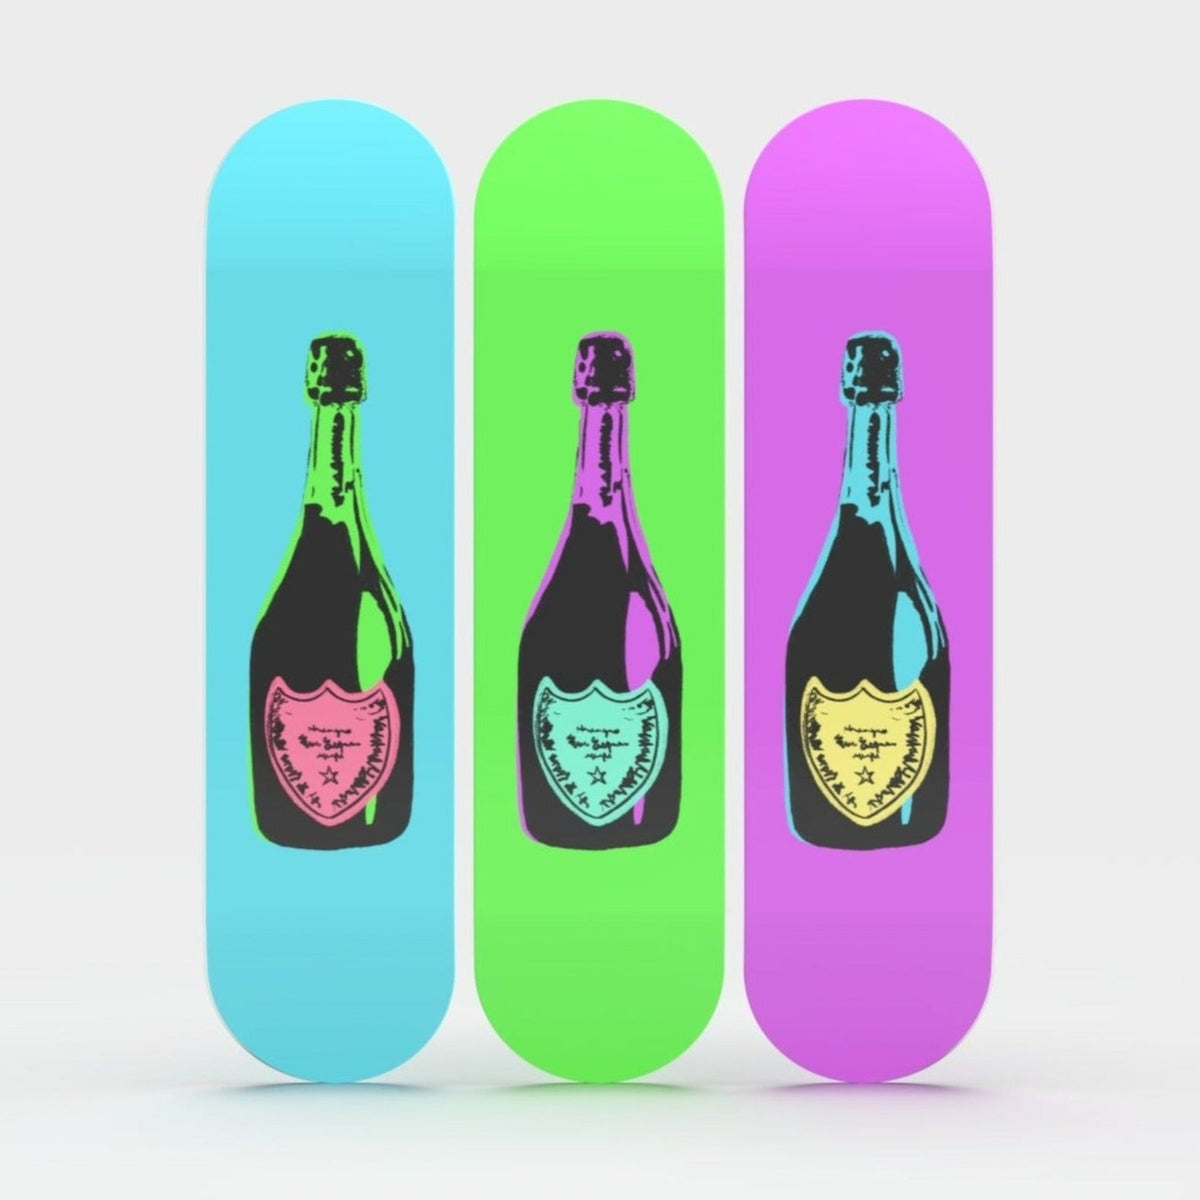 3-Piece Wall Art of Bottle Skateboard Design in Acrylic Glass - Retro